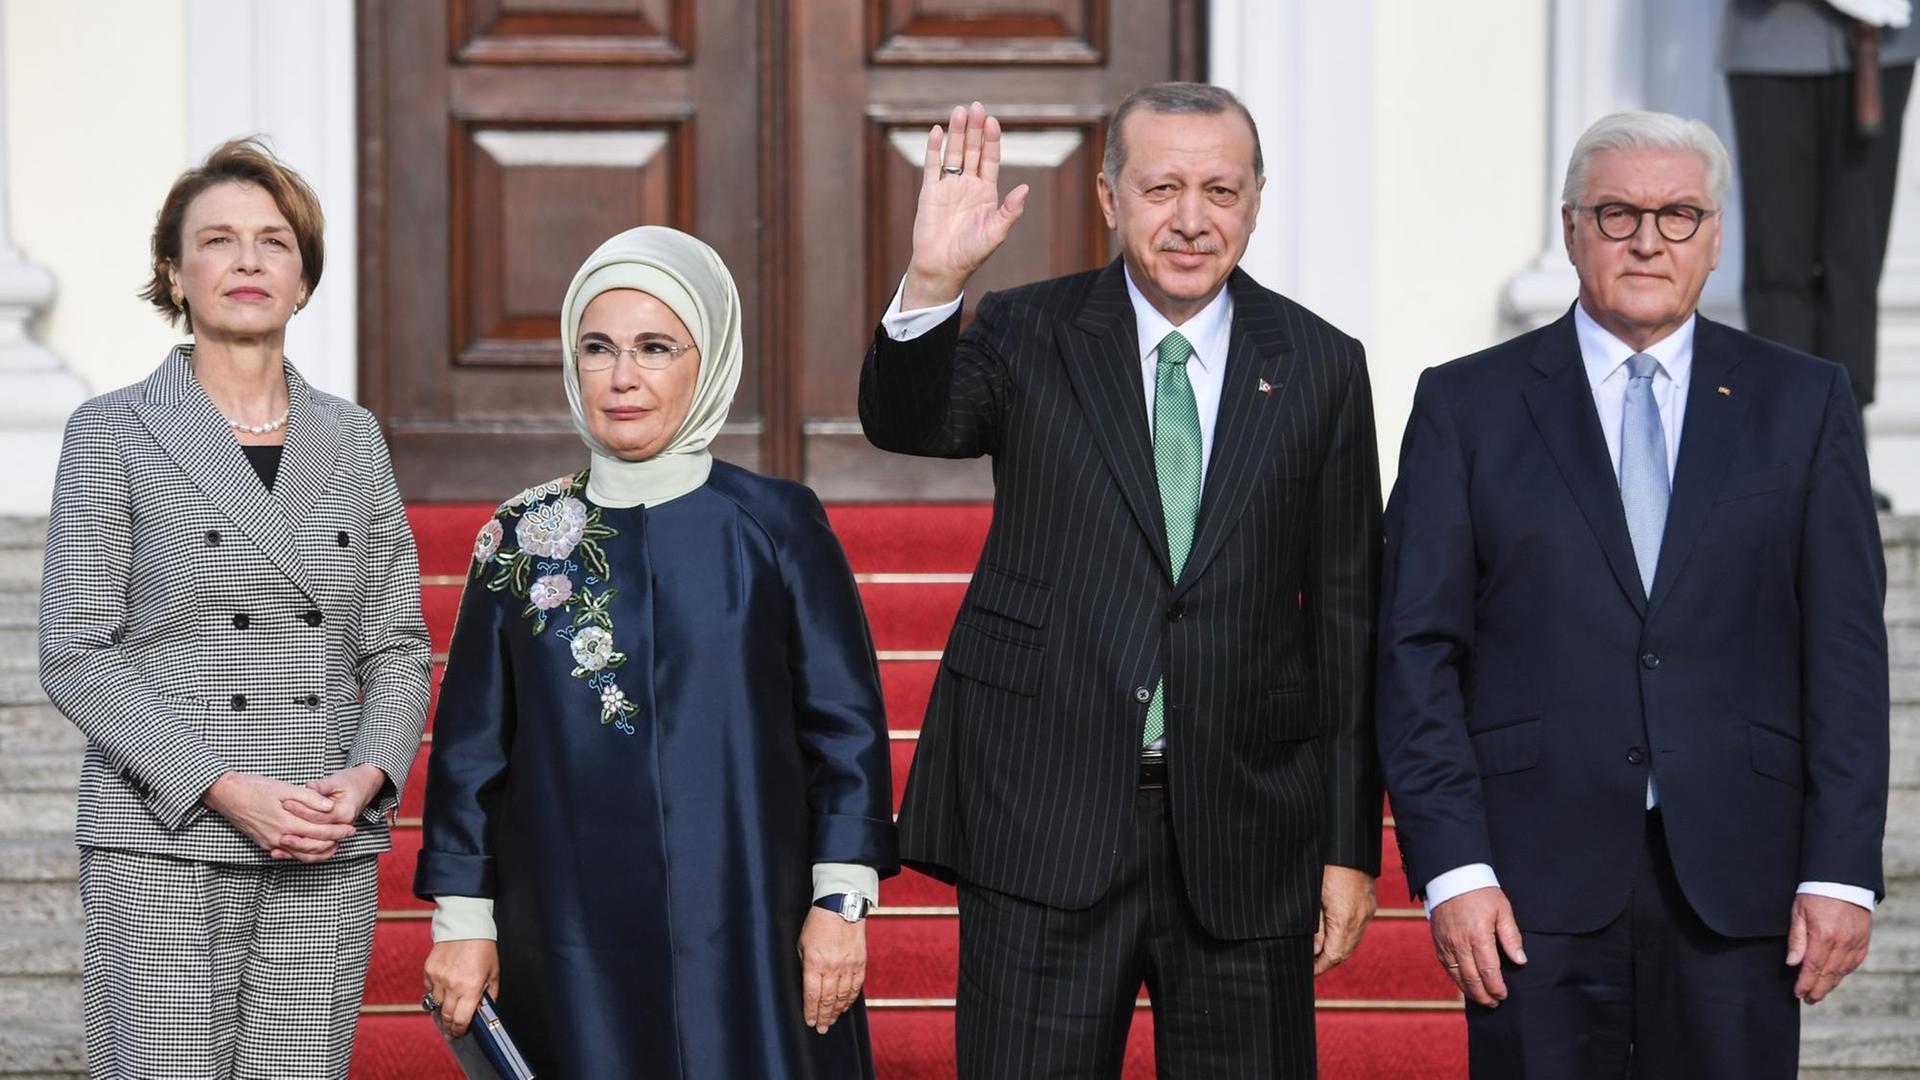 28.09.2018, Berlin: Bundespräsident Frank-Walter Steinmeier (r) und seine seine Frau Elke Büdenbender (l) begrüßen Recep Tayyip Erdogan, Präsident der Türkei, und seine Frau Emine Erdogan vor Schloss Bellevue.